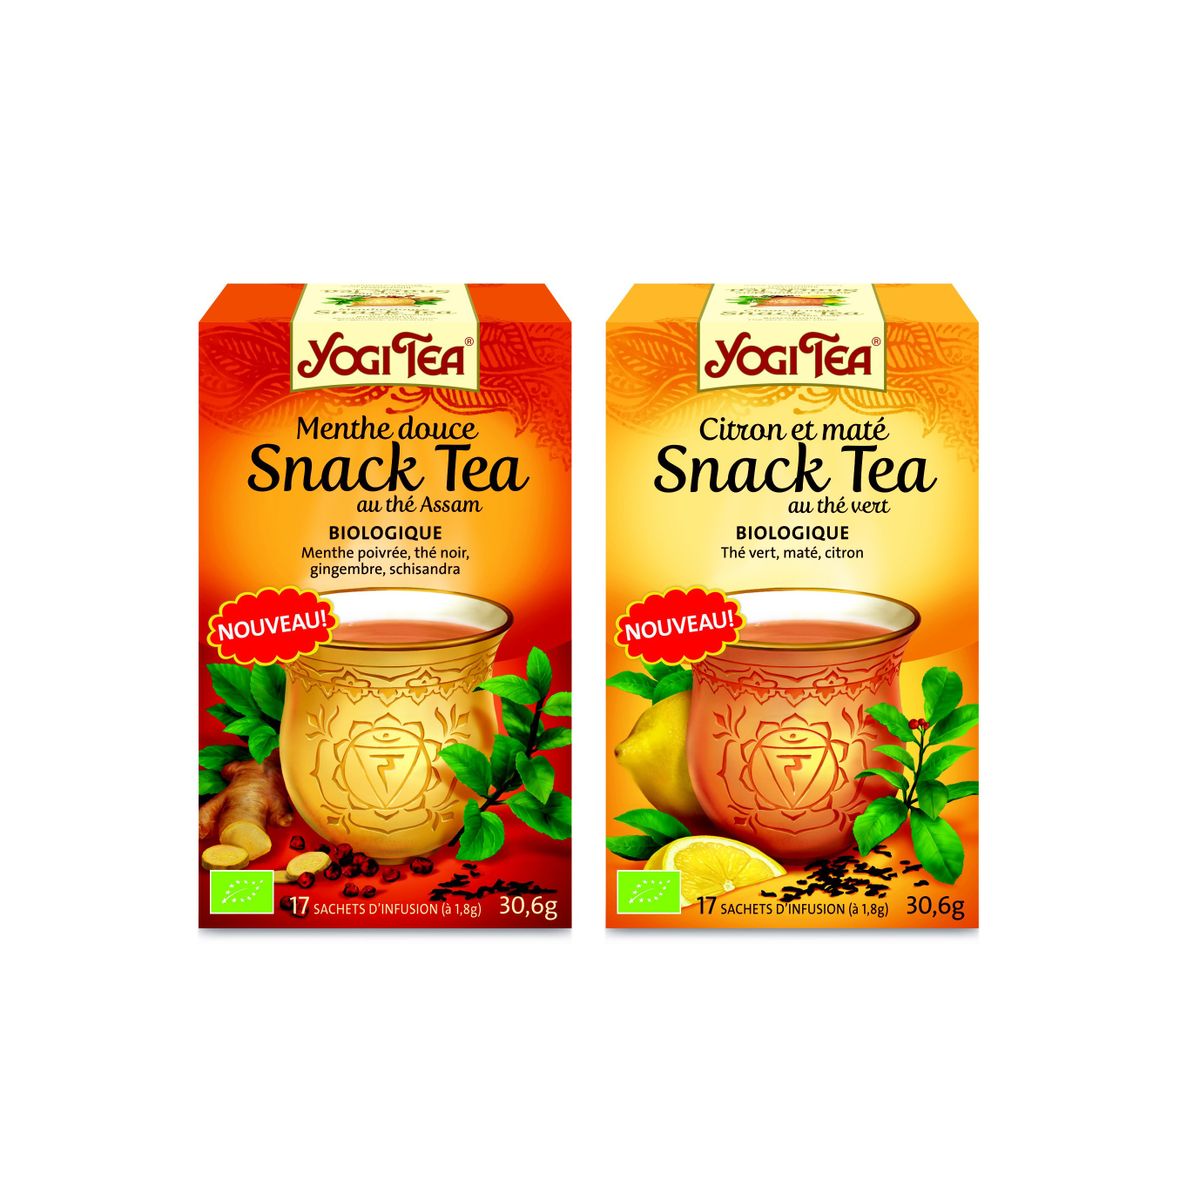 Coffret bois 9 saveurs collection Tea Addict